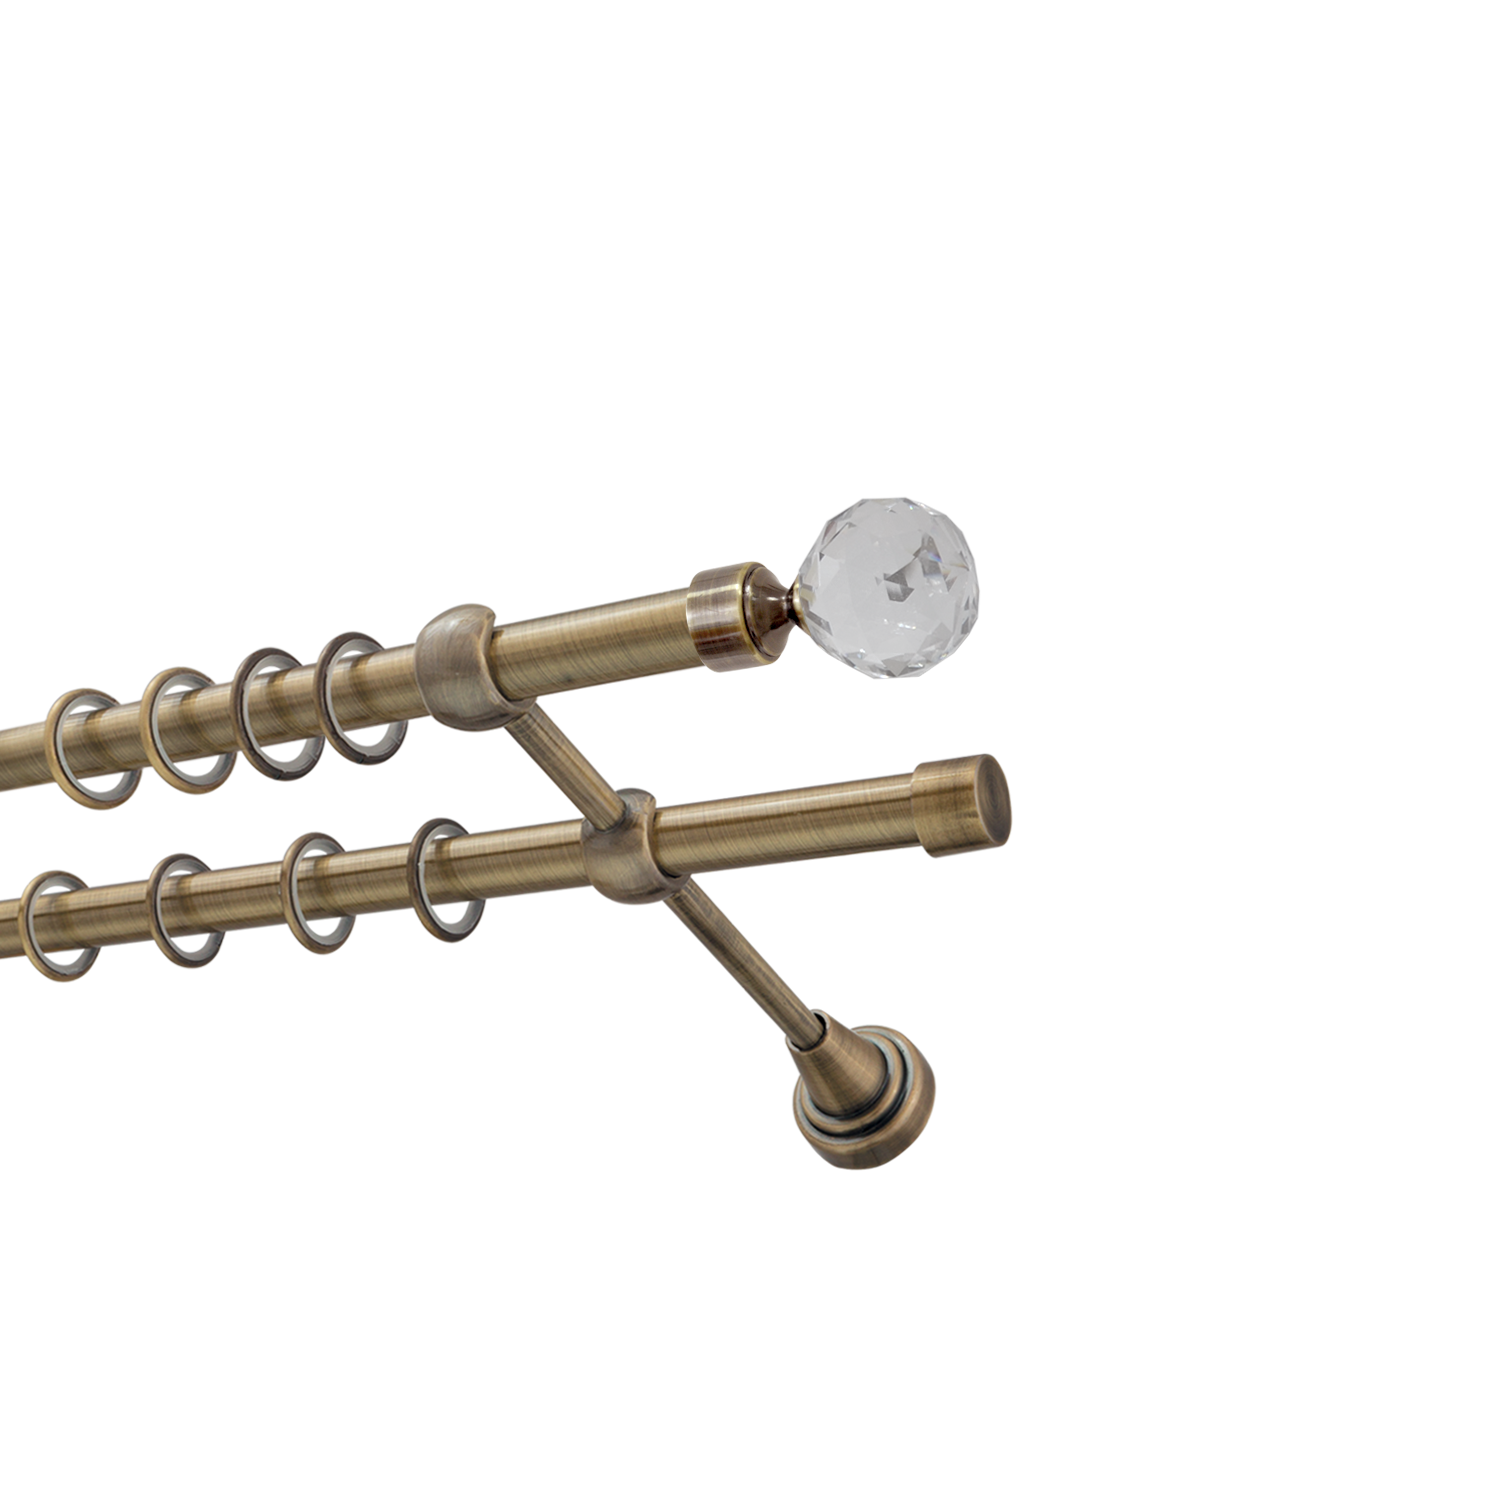 Металлический карниз для штор Карат, двухрядный 16/16 мм, бронза, гладкая штанга, длина 160 см - фото Wikidecor.ru